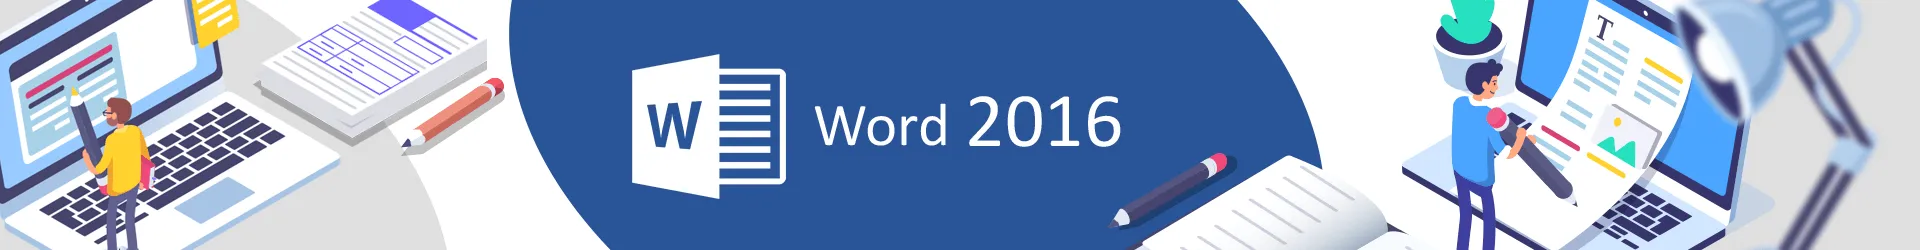 Formation Word 2016 : s’exercer aux fonctionnalités avancées 
Cours en E-Learning avec tutorat